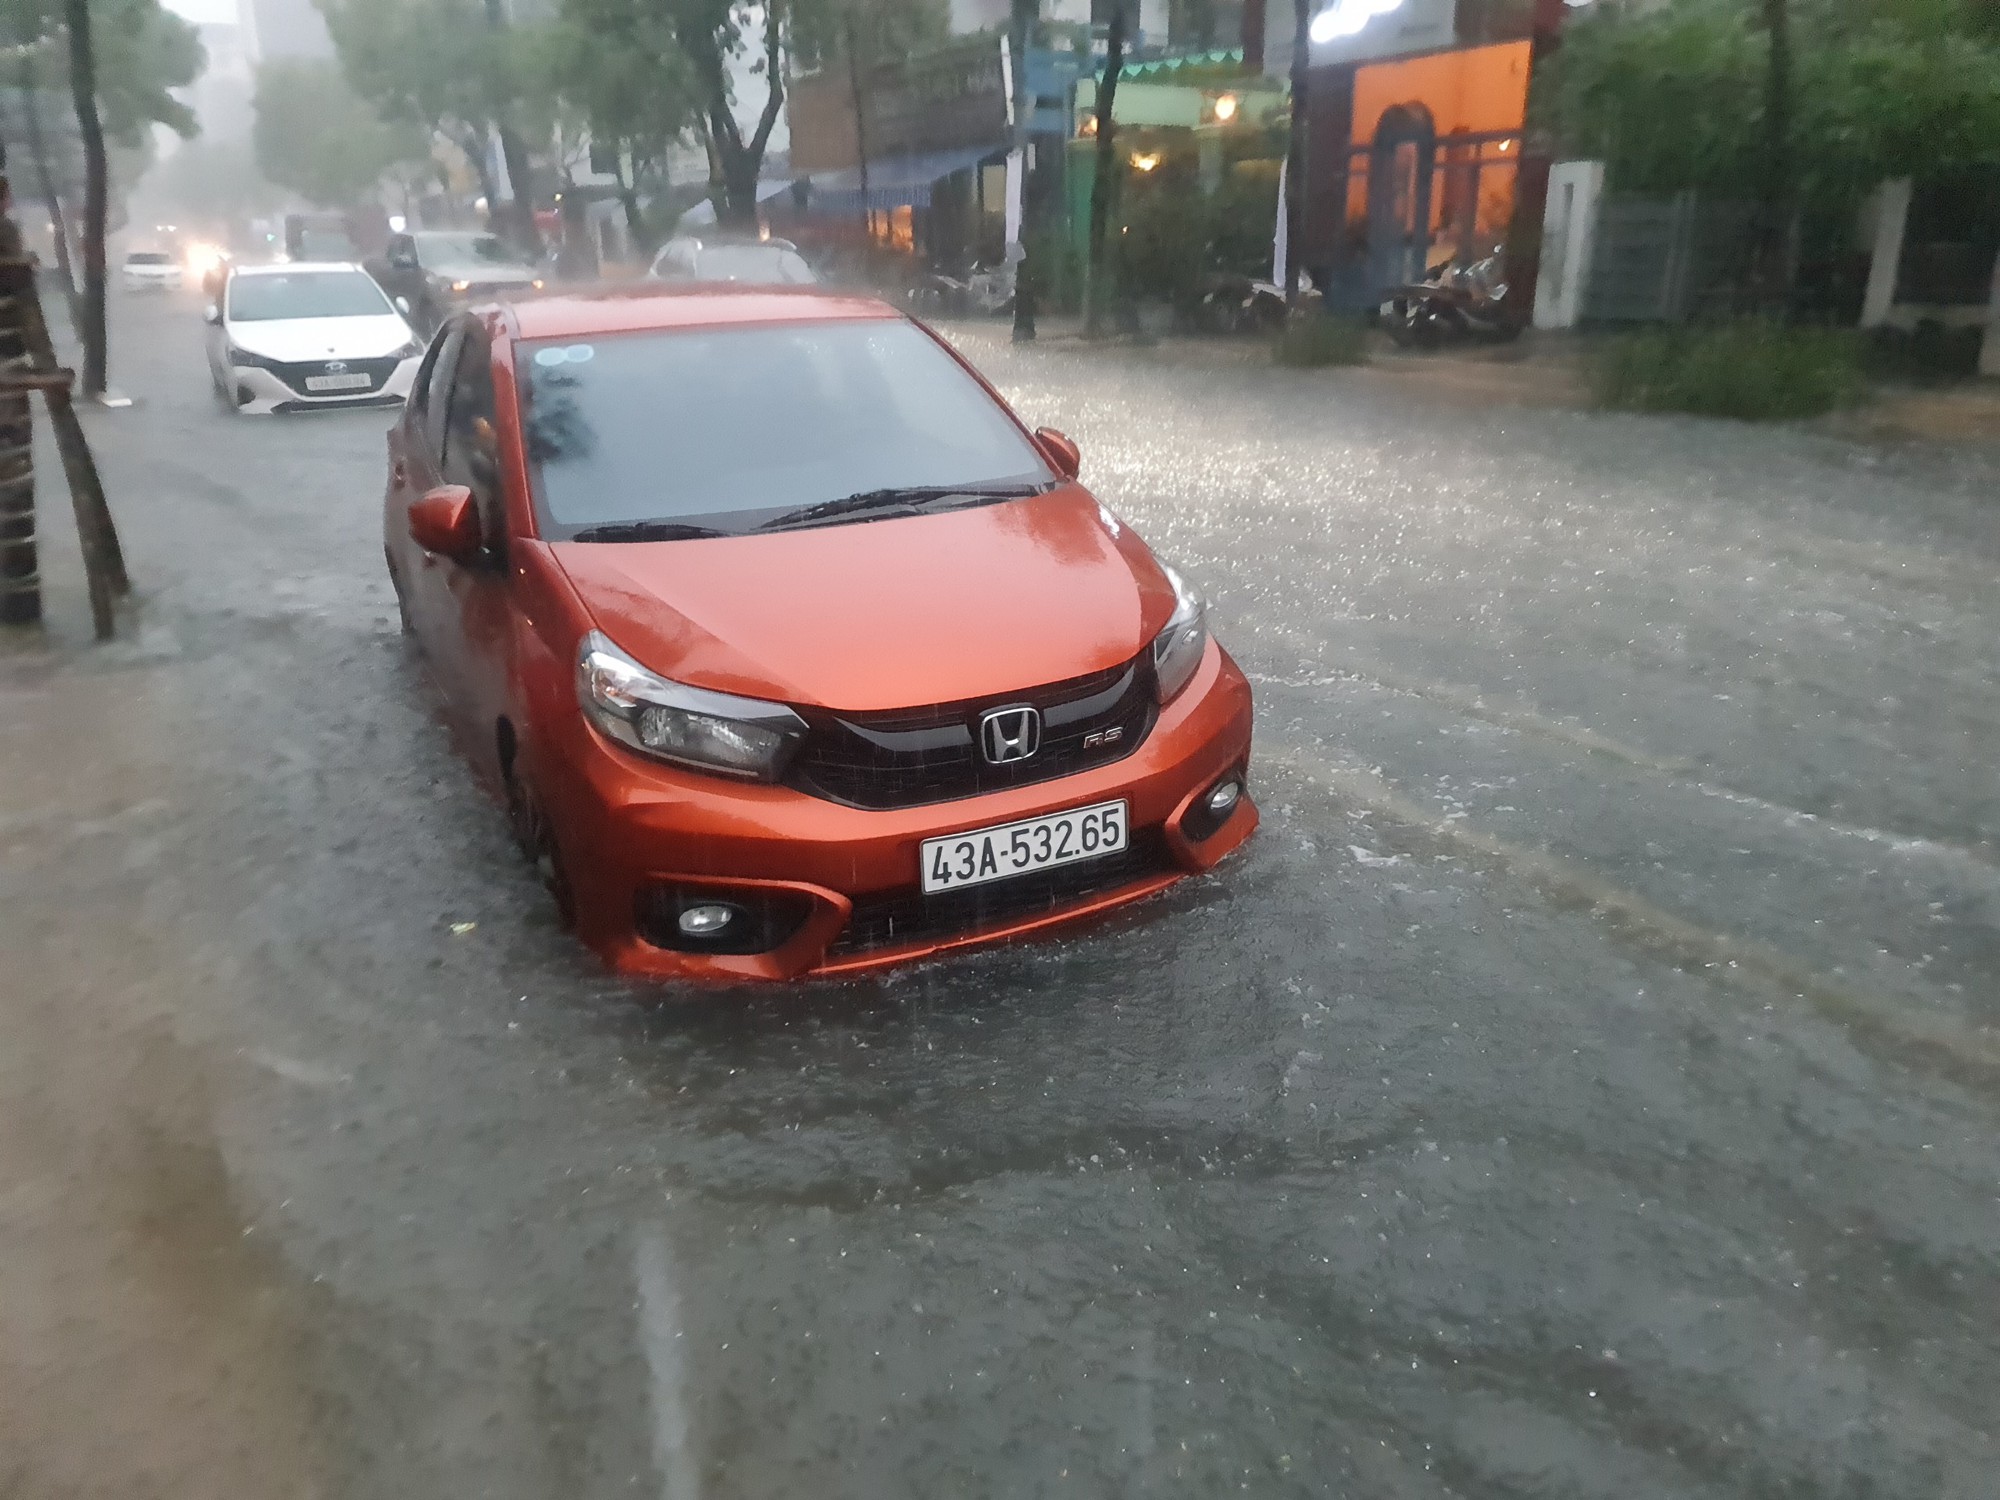 Bão số 5 gây mưa lớn, đường phố Đà Nẵng ngập, 2 tàu cá Khánh Hòa bị chìm  - Ảnh 11.